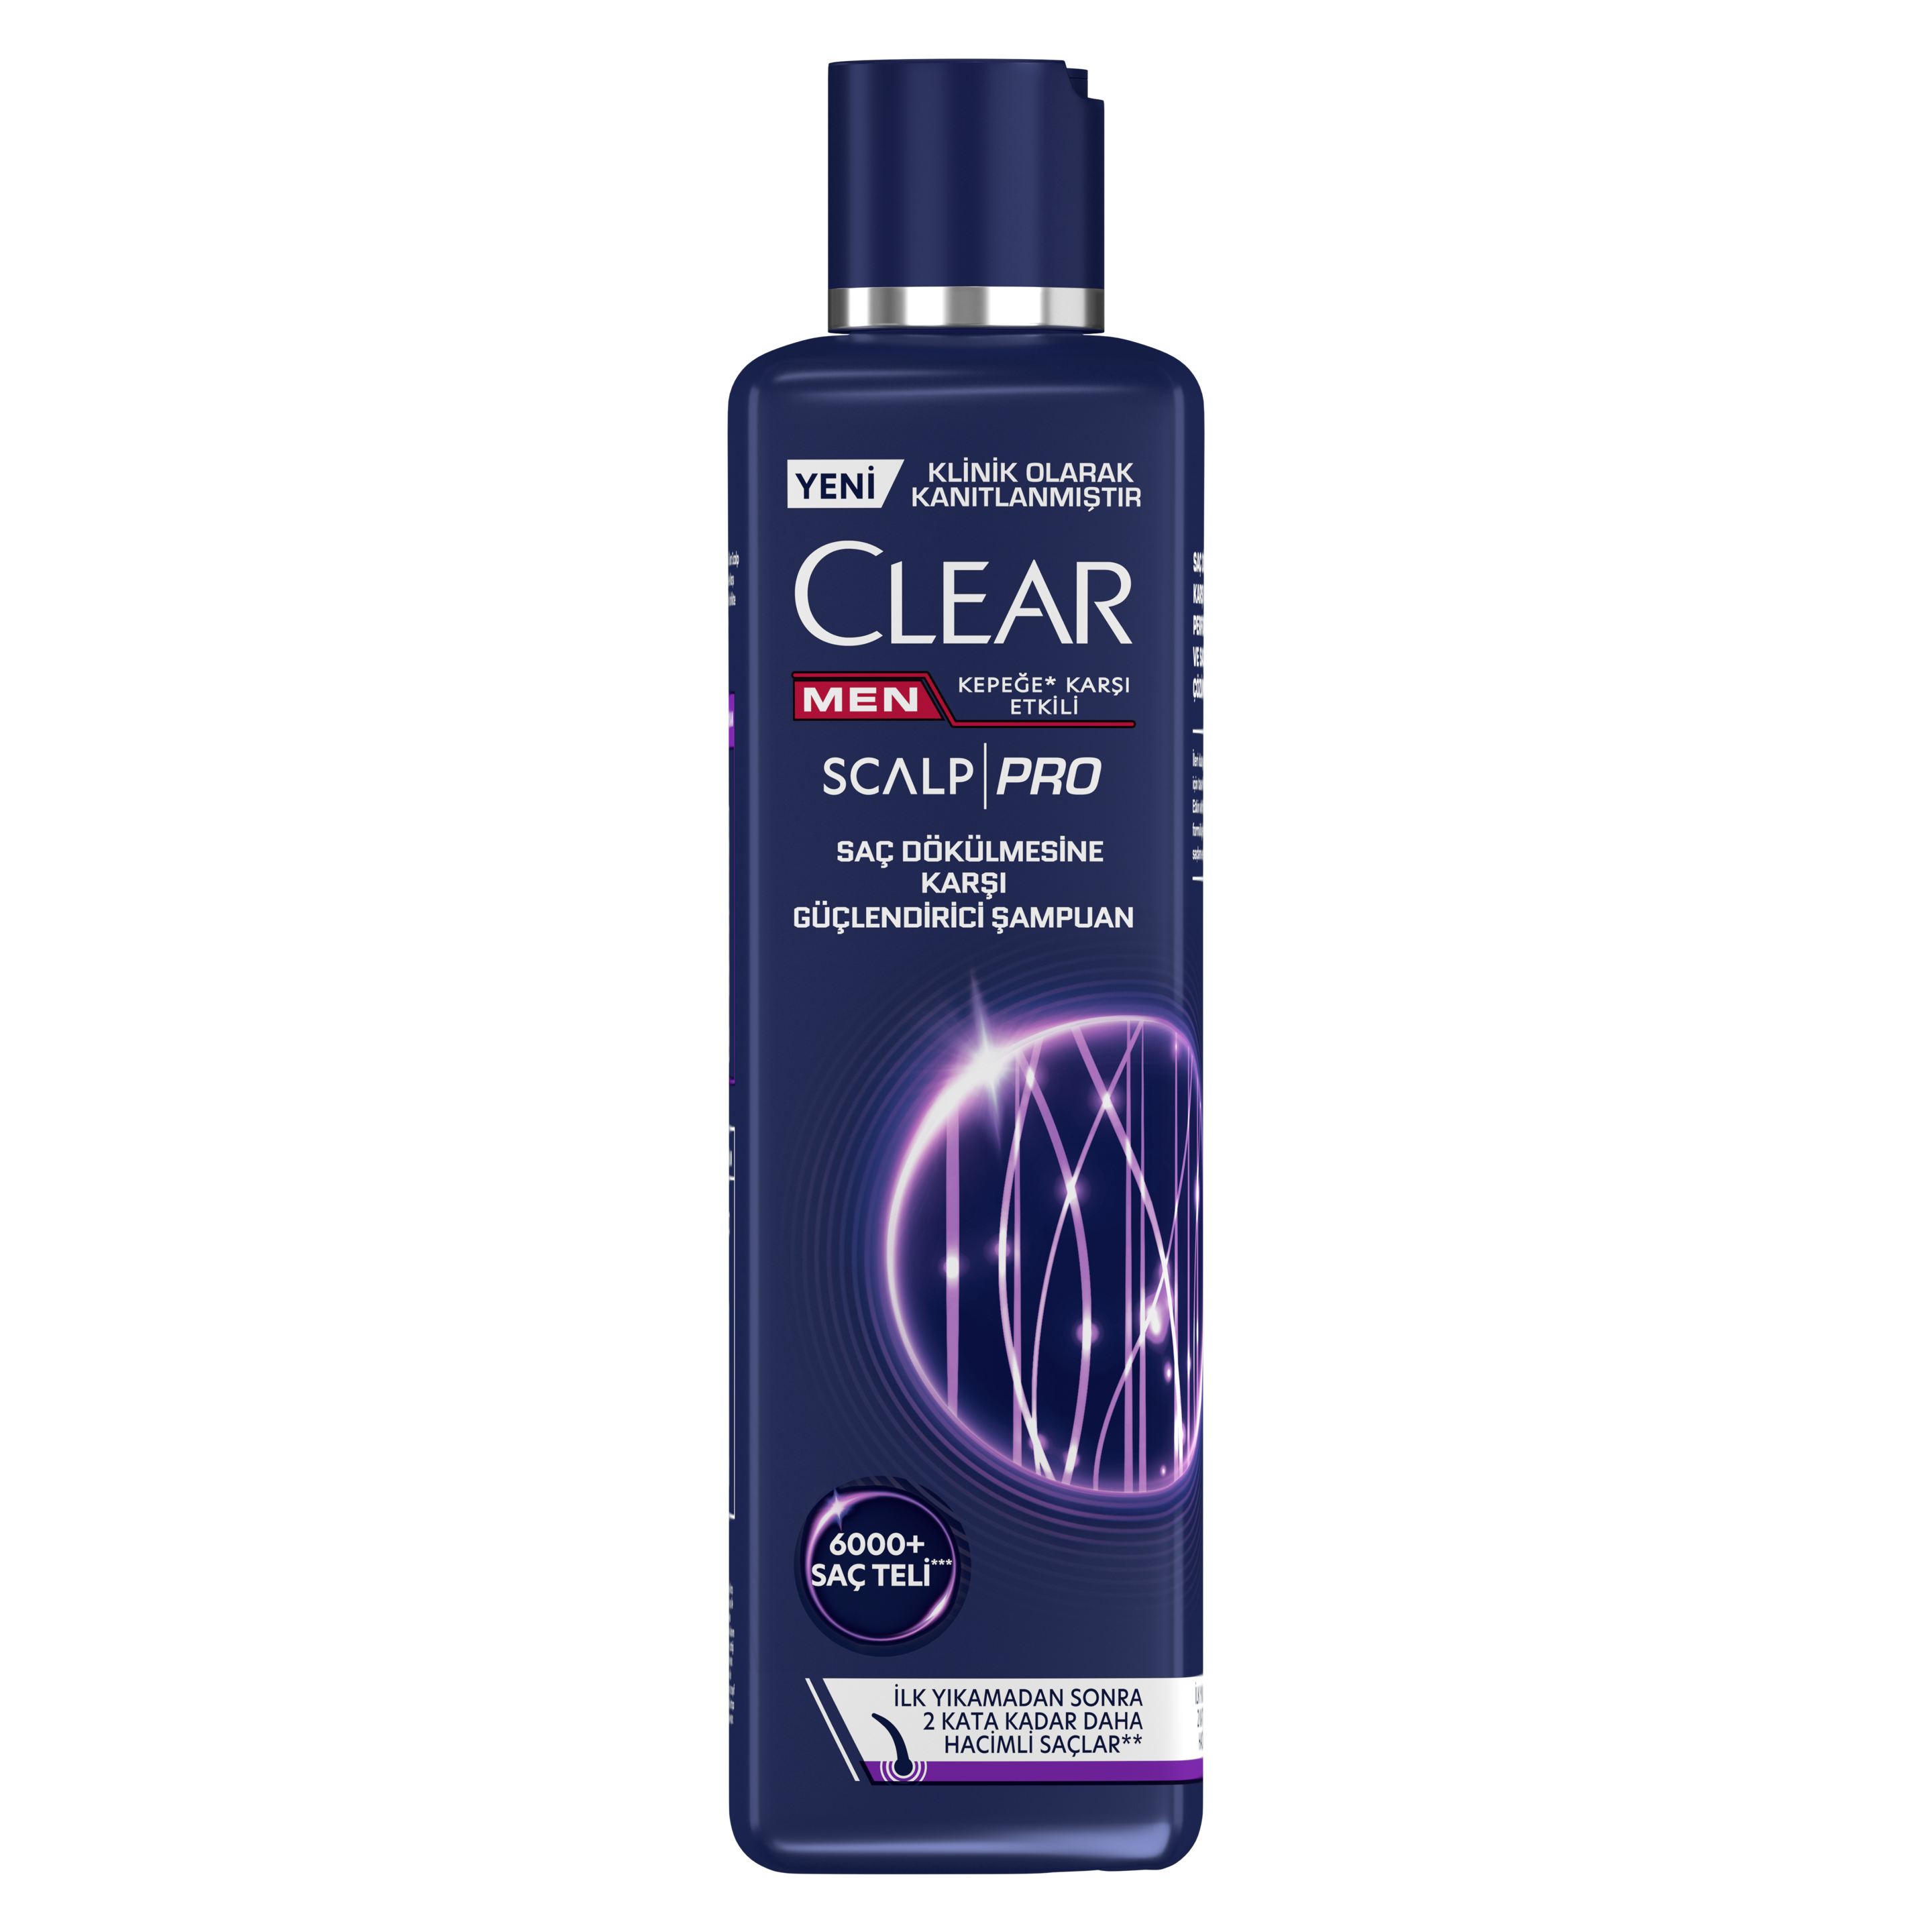 Clear Men Scalp Pro Saç Dökülmesine Karşı Güçlendirici Şampuan